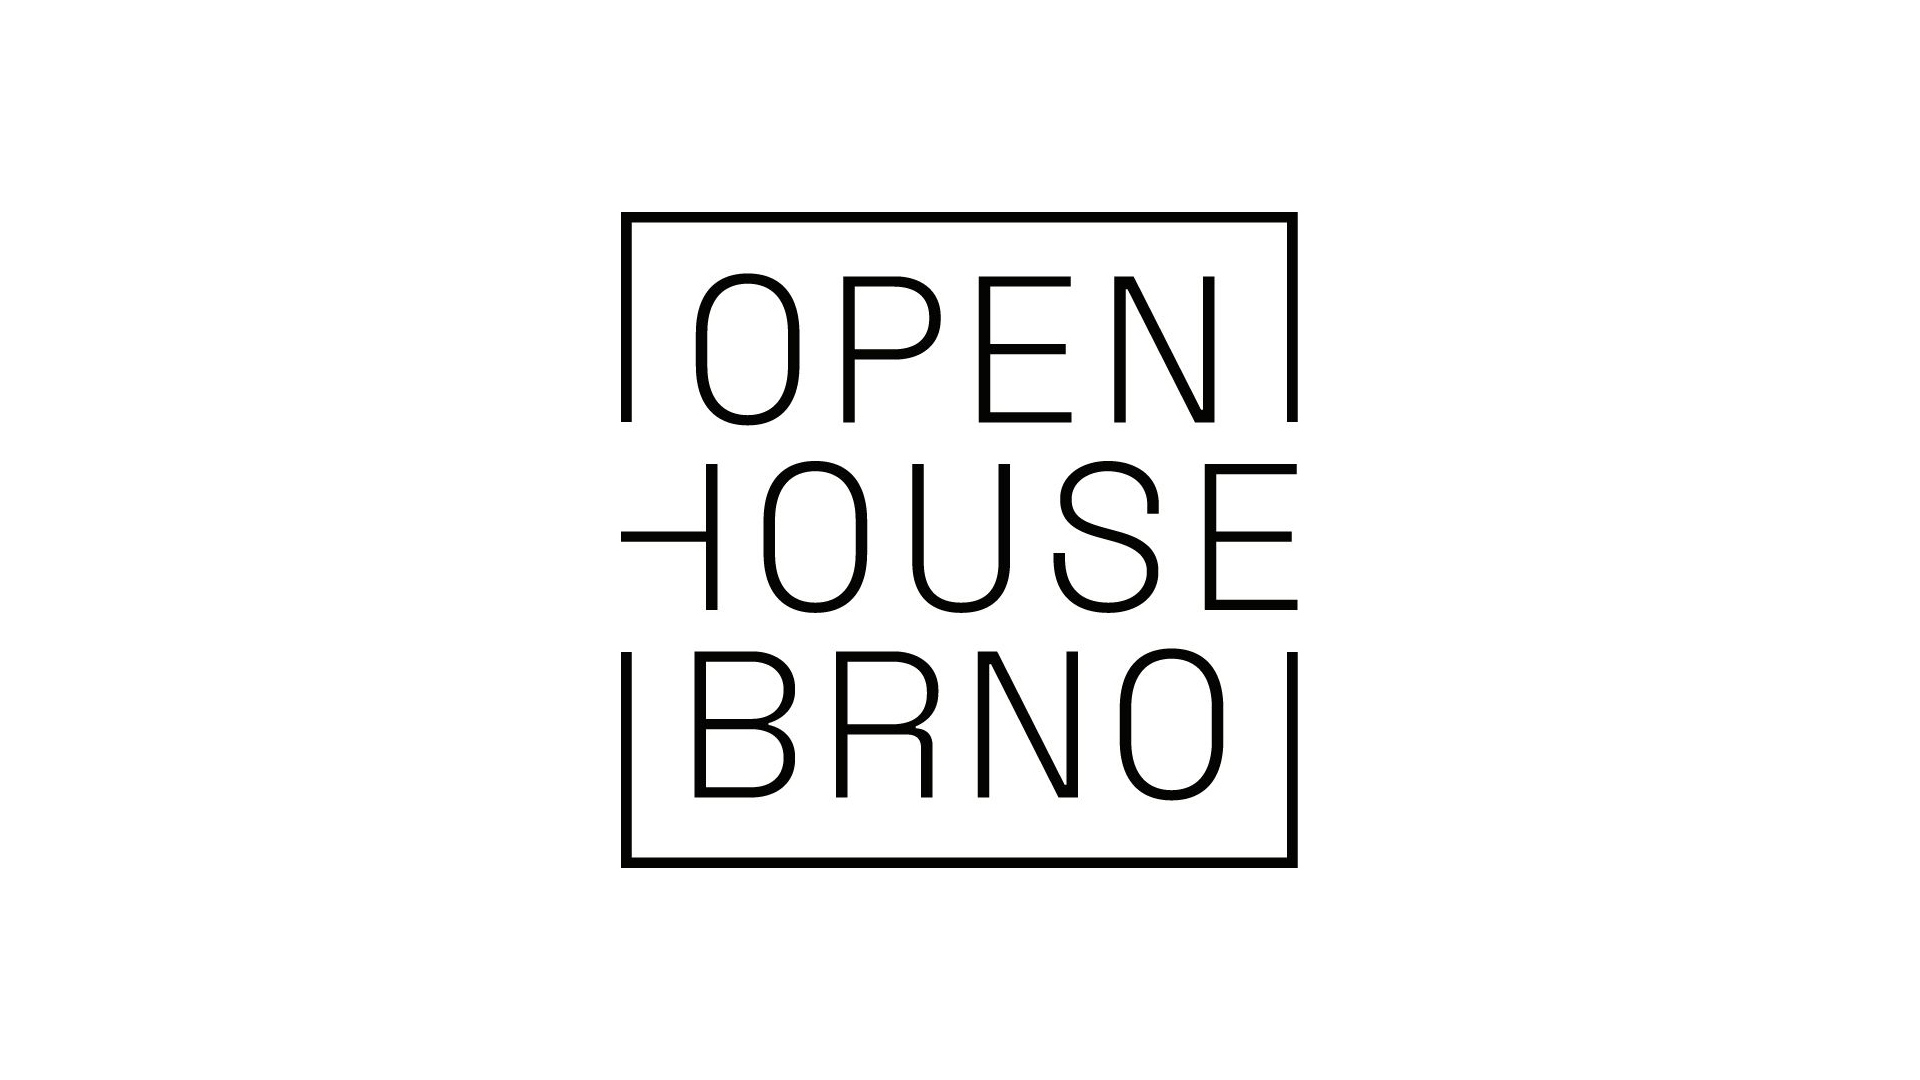 Open House Brno